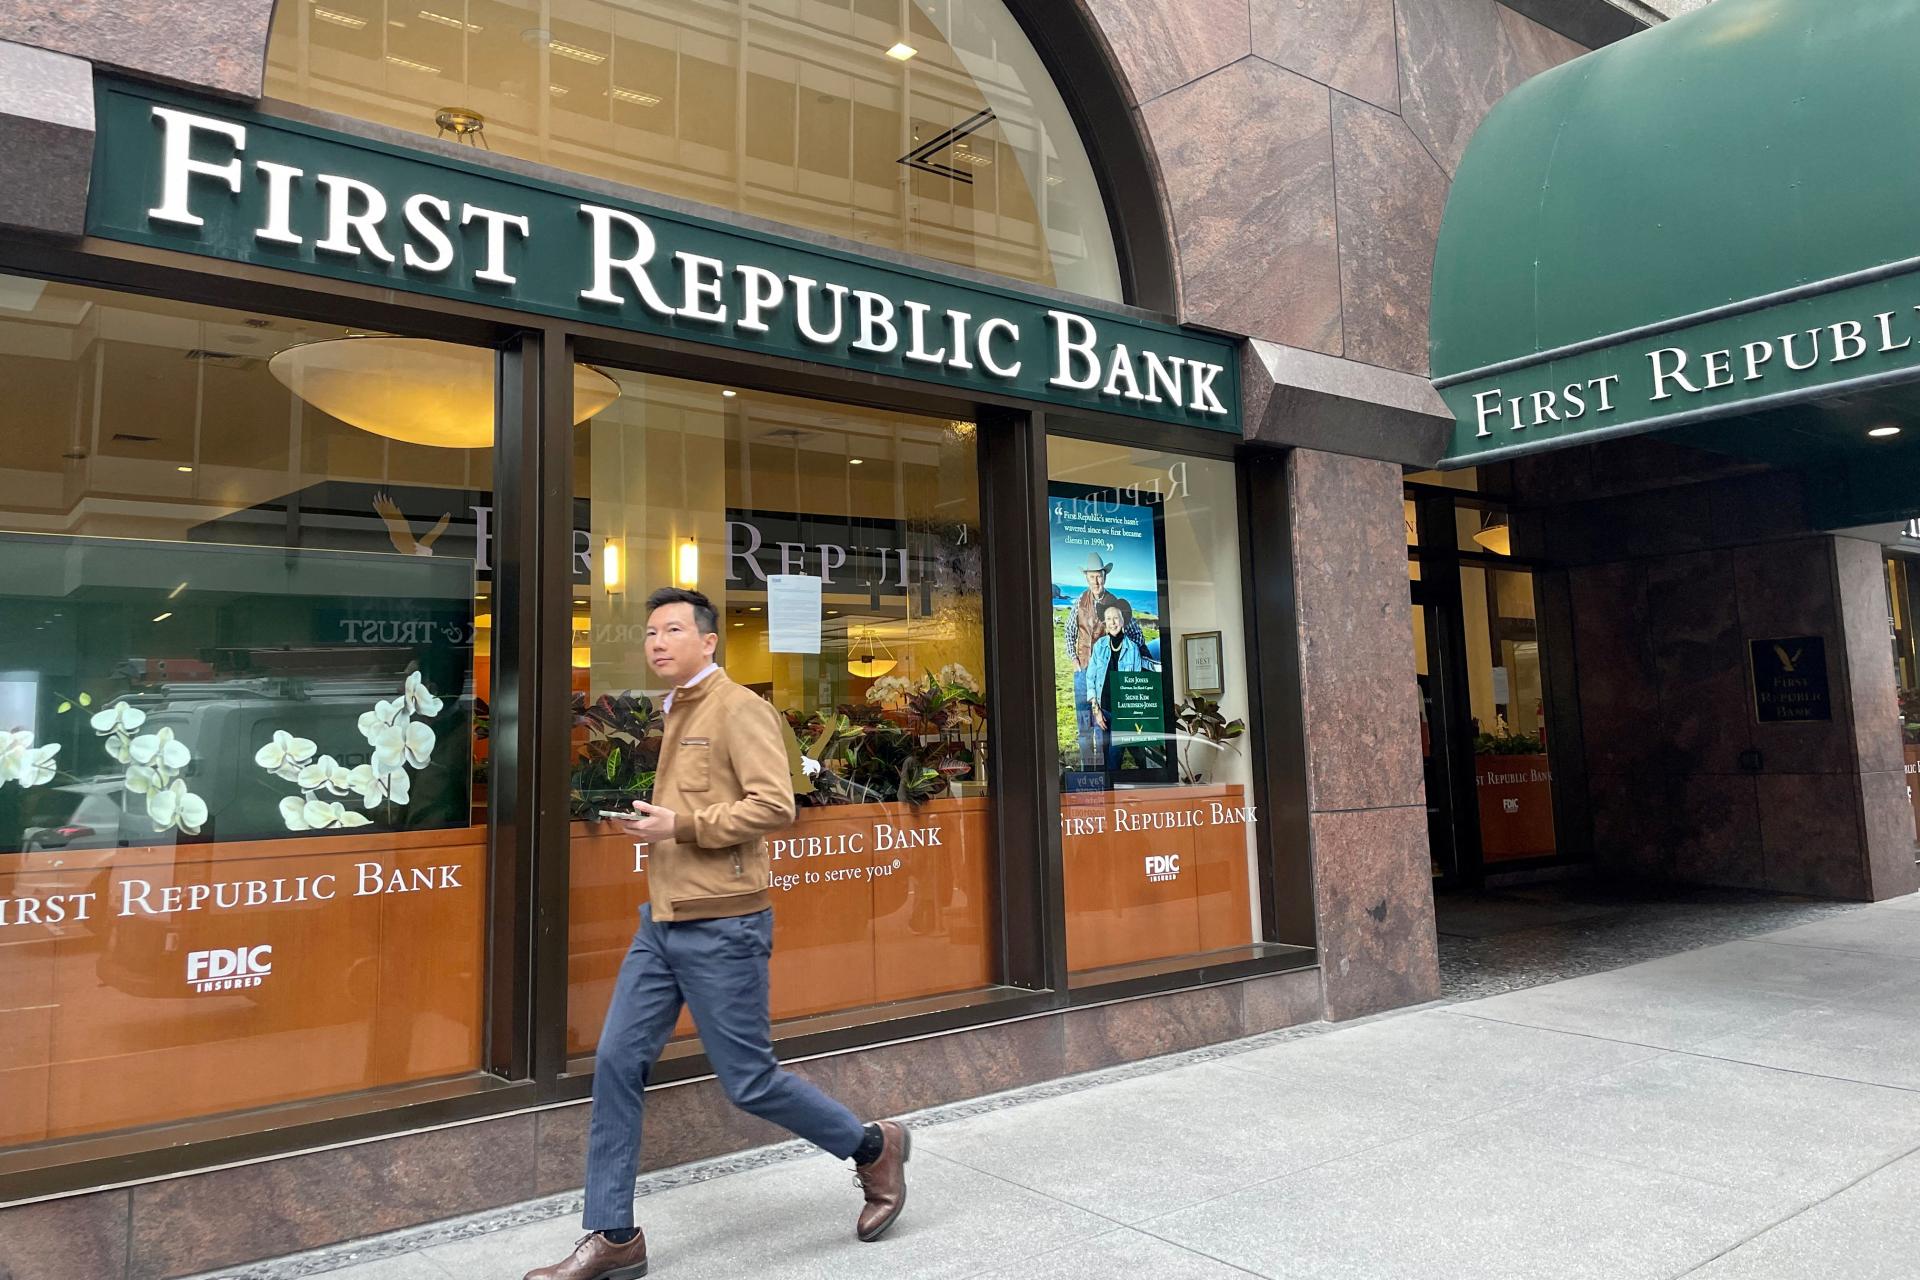 First Republic Bank pred kolapsom vyplatila štedré miliónové odmeny